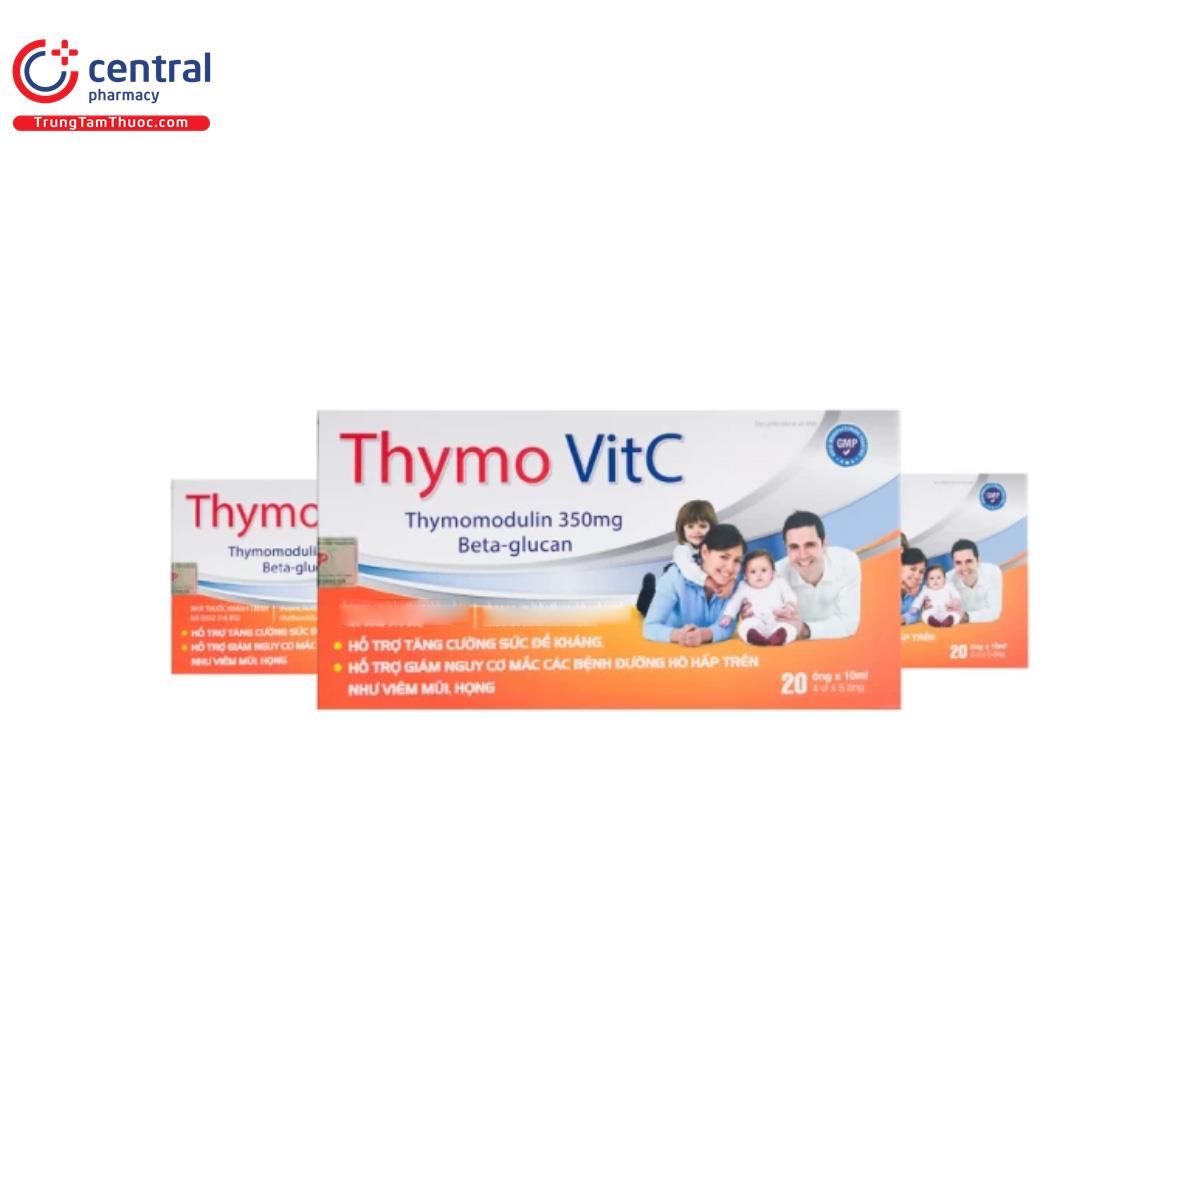 Thymo VitC